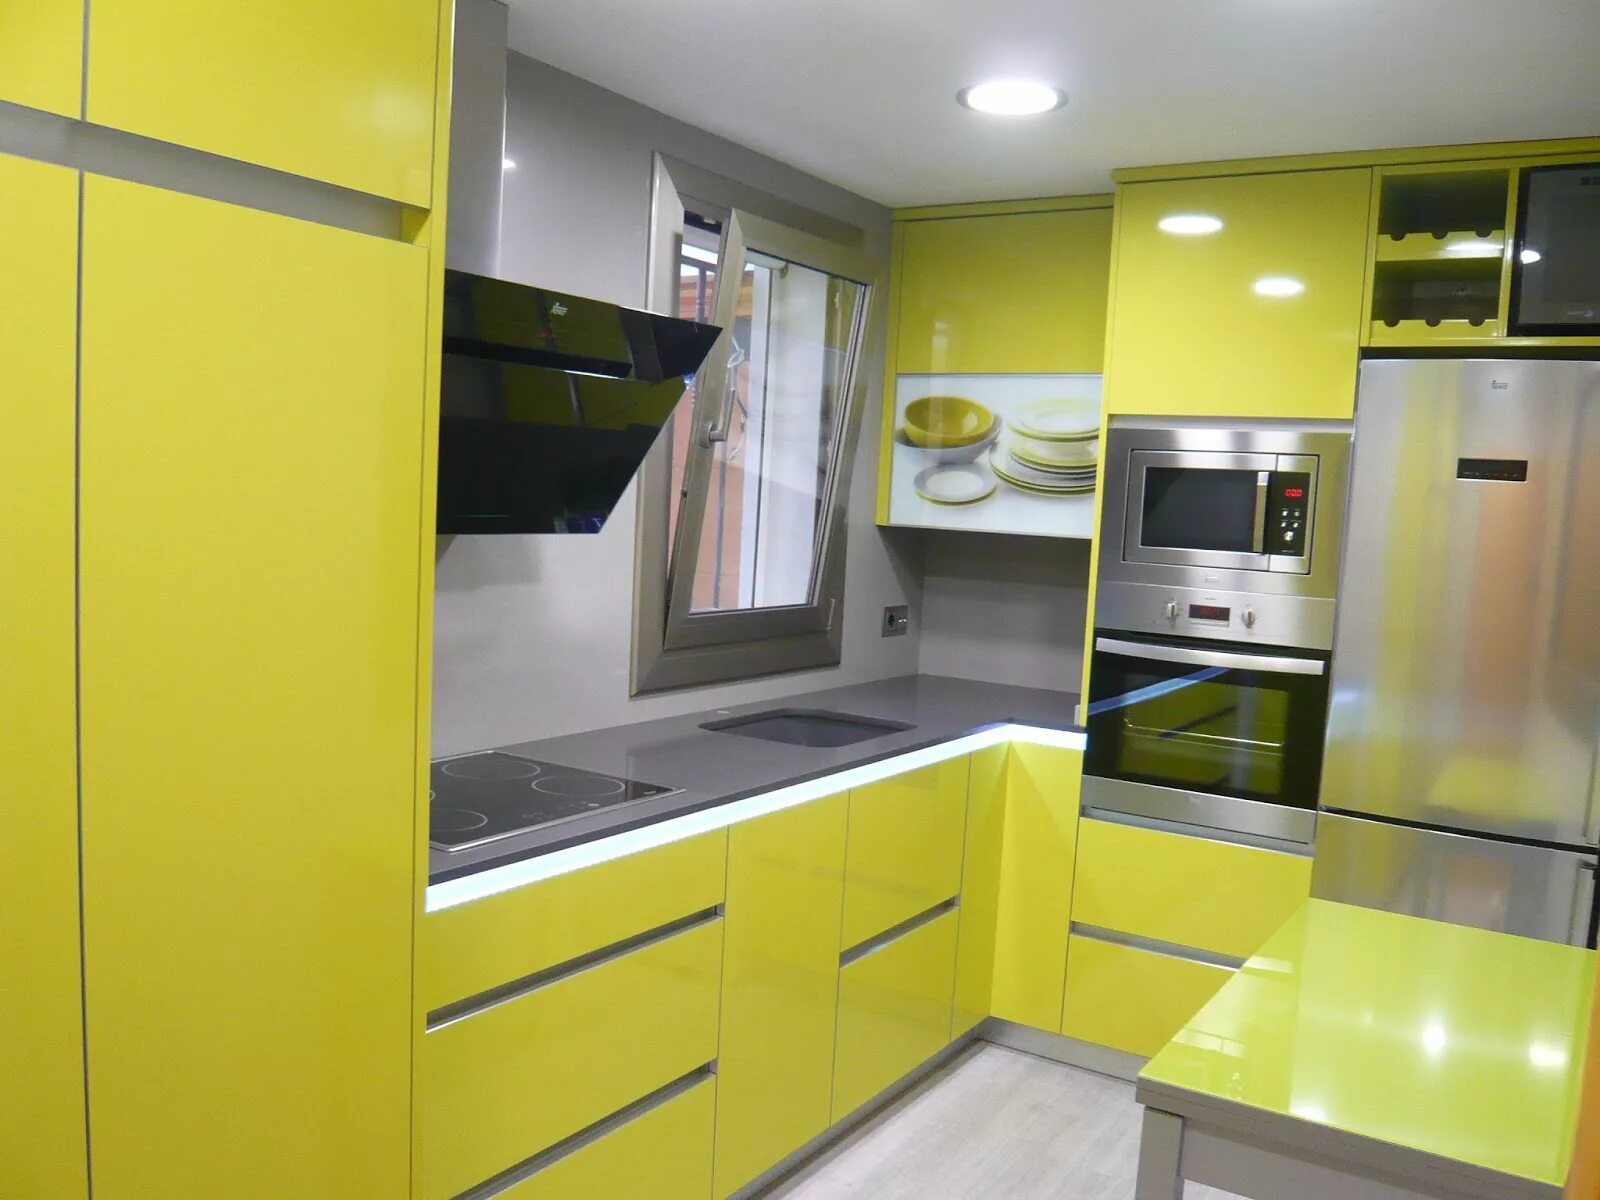 Желтые кухни. Кухня в желто зеленых тонах. Кухня лимонного цвета. Желто зеленая кухня